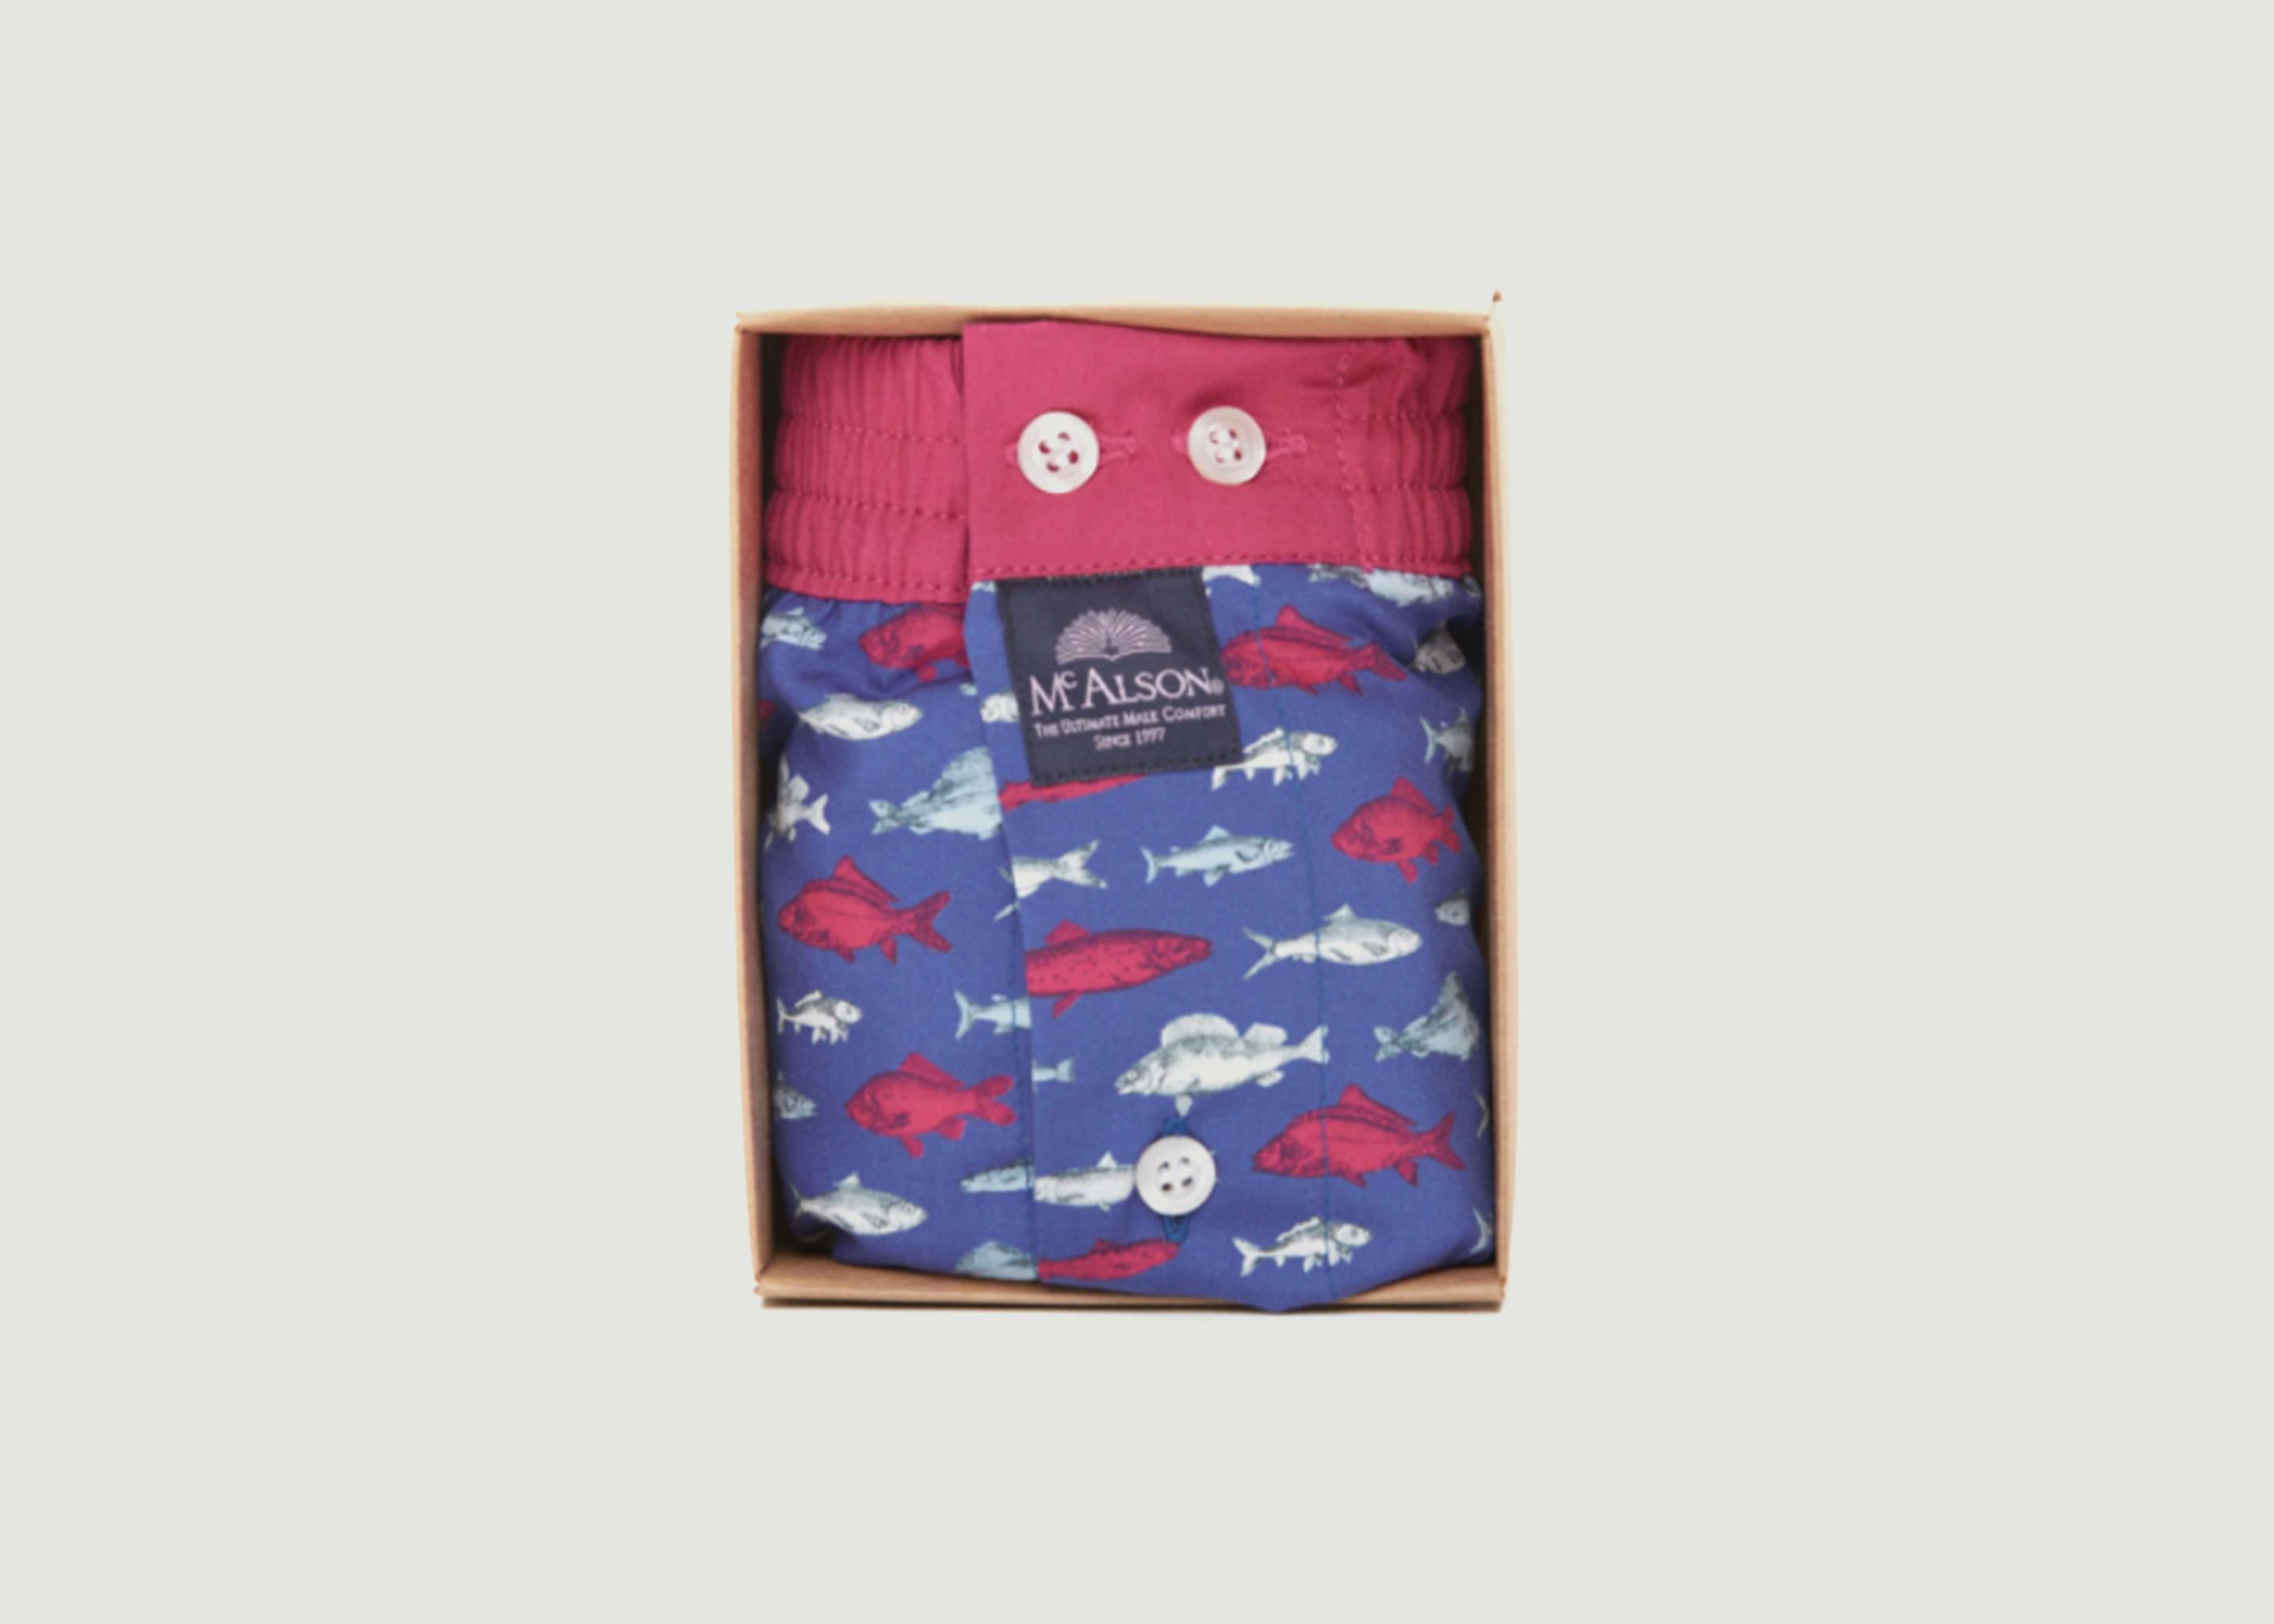 Fish printed boxer shorts - Mc Alson